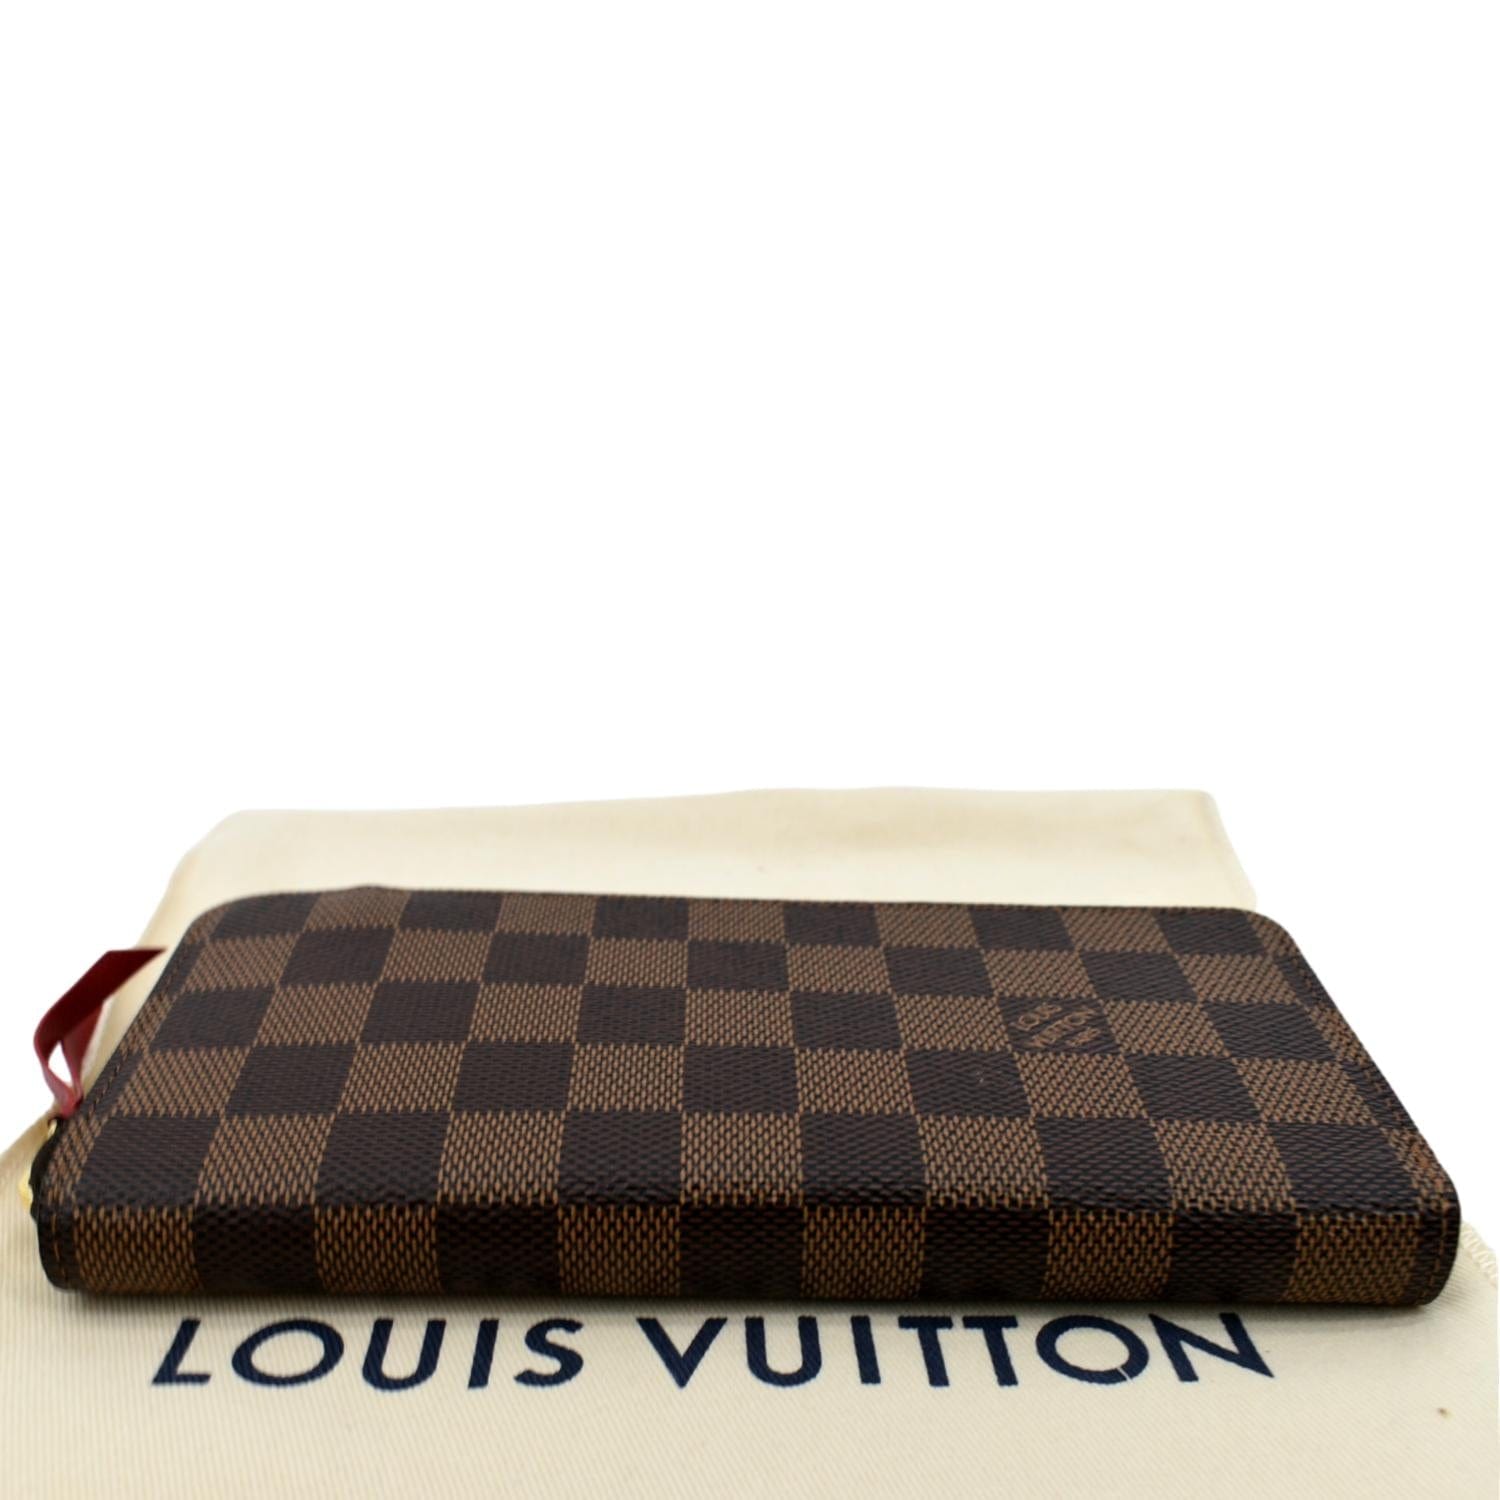 Louis Vuitton, Bags, Authentic Louis Vuitton Monogram Zippy Wallet Long  Purse